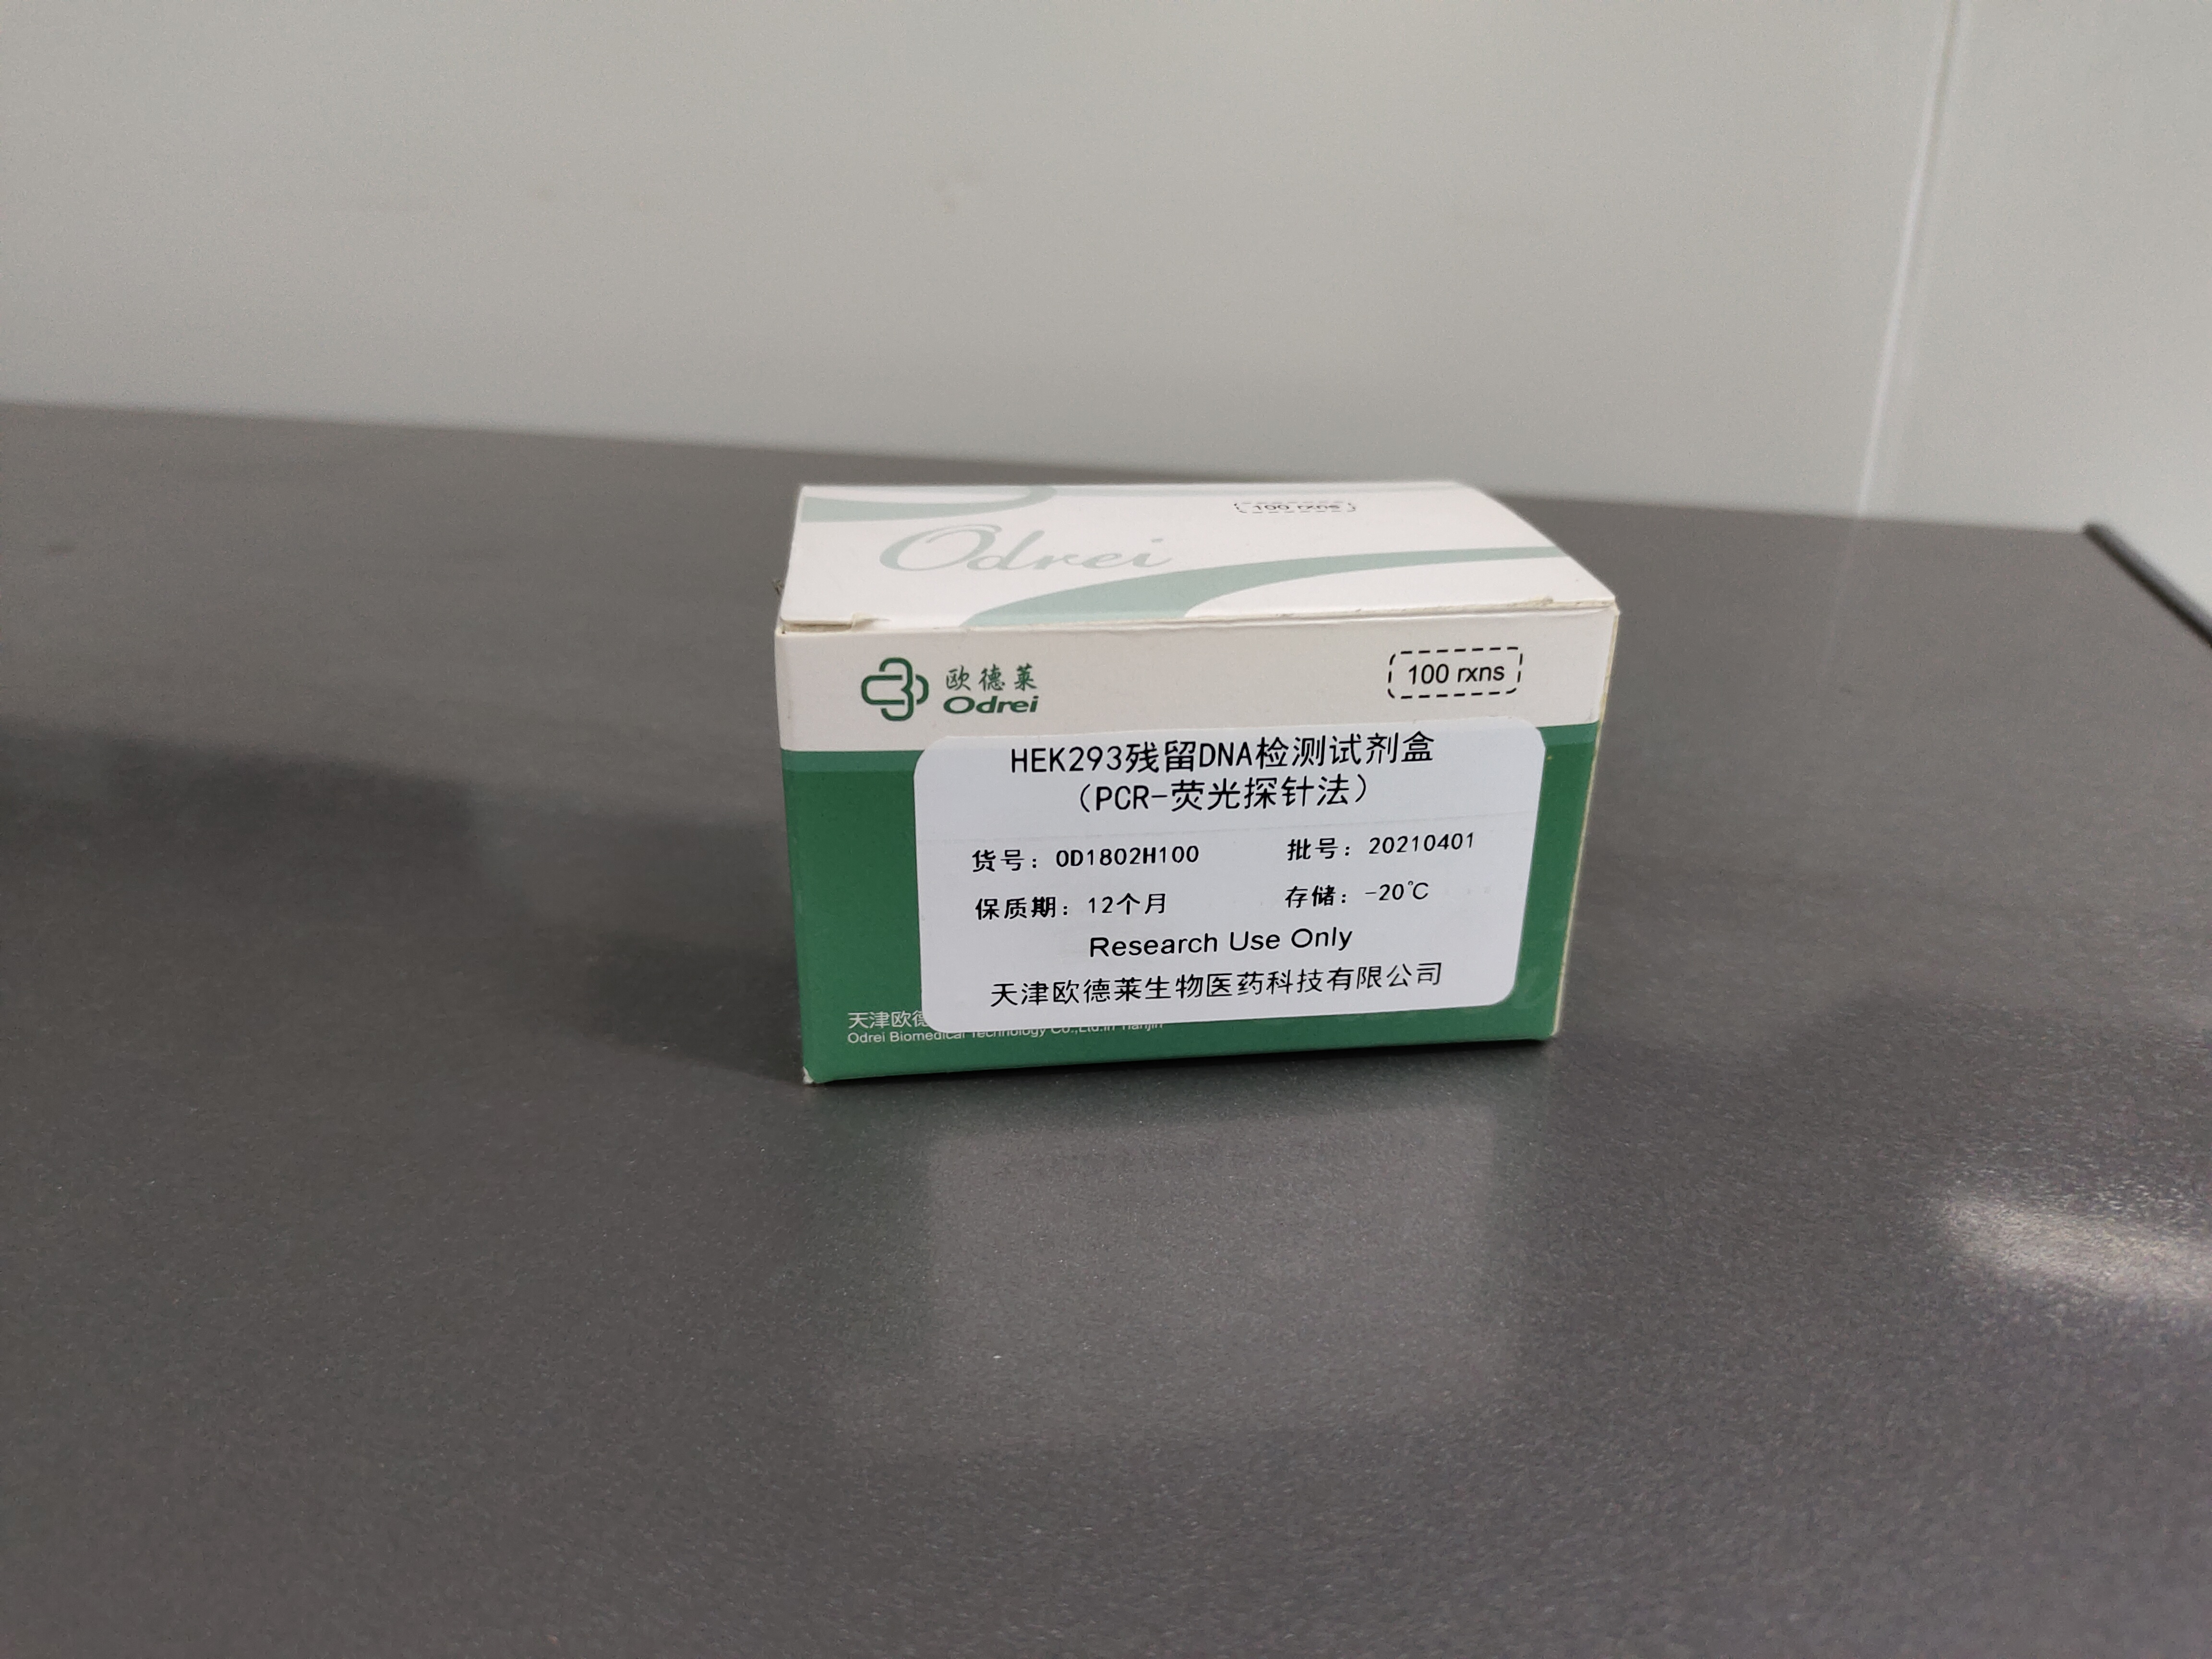 HEK293残留DNAj检测试剂盒